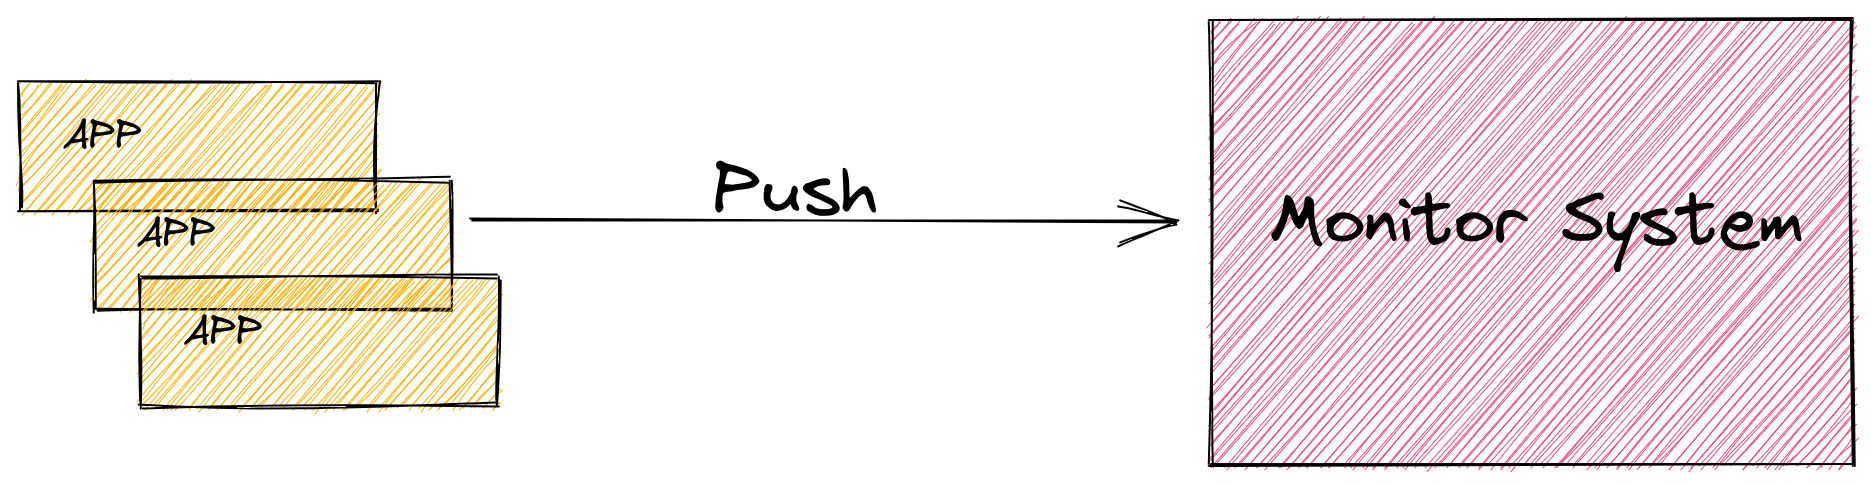 Monitor Push model